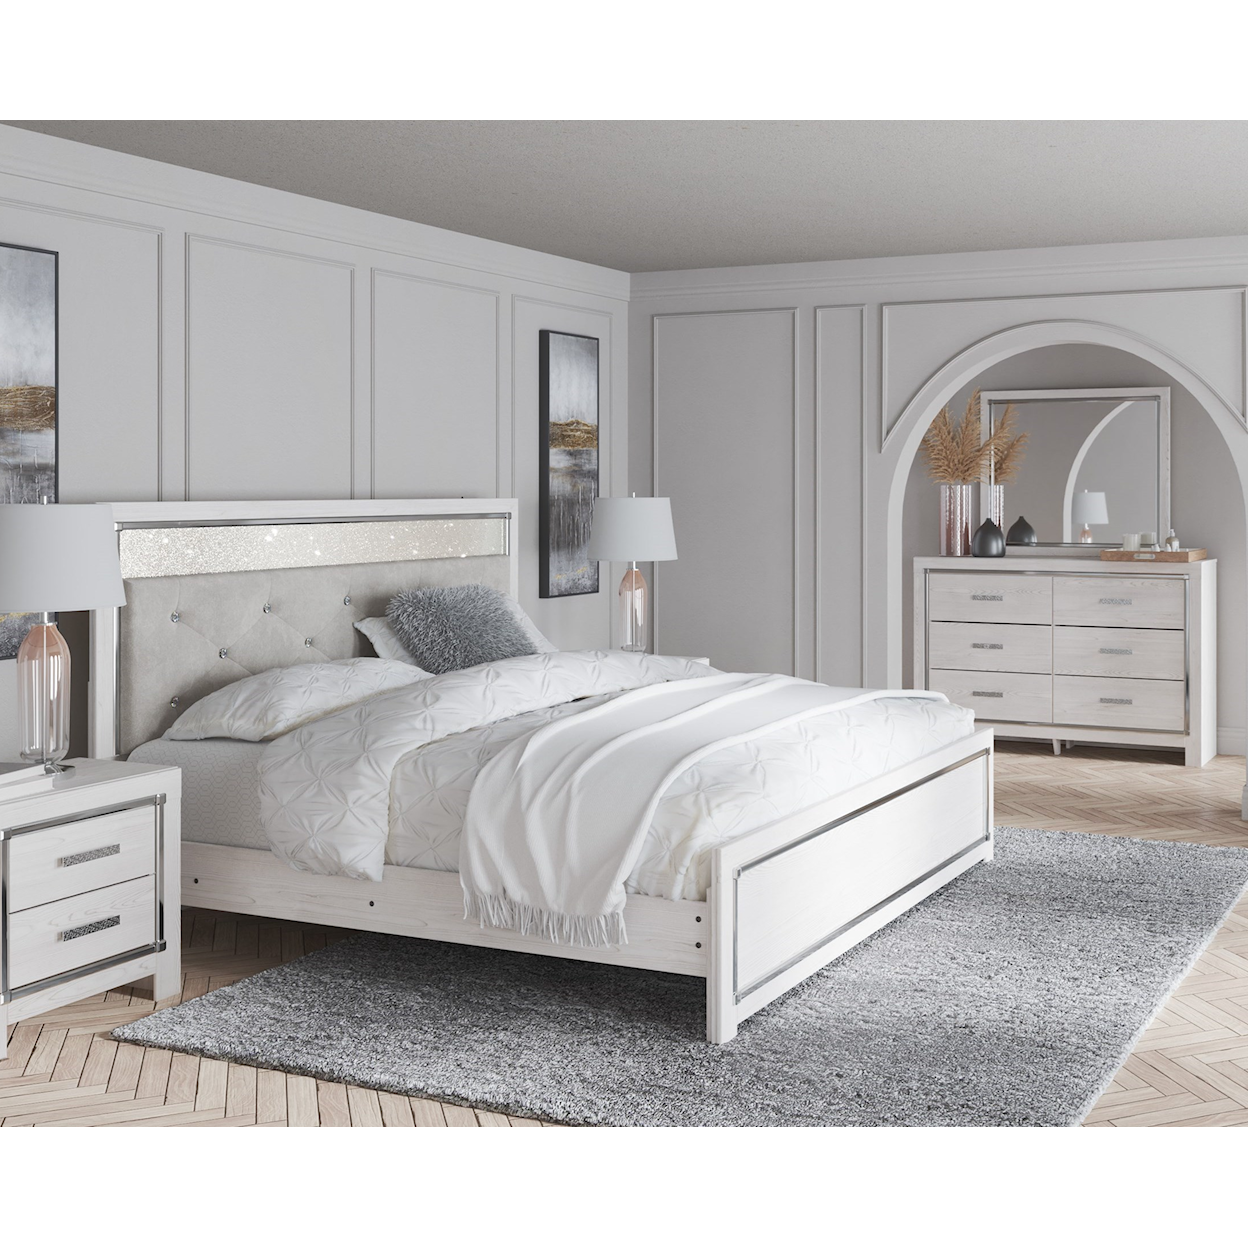 Michael Alan Select Altyra King Bedroom Set